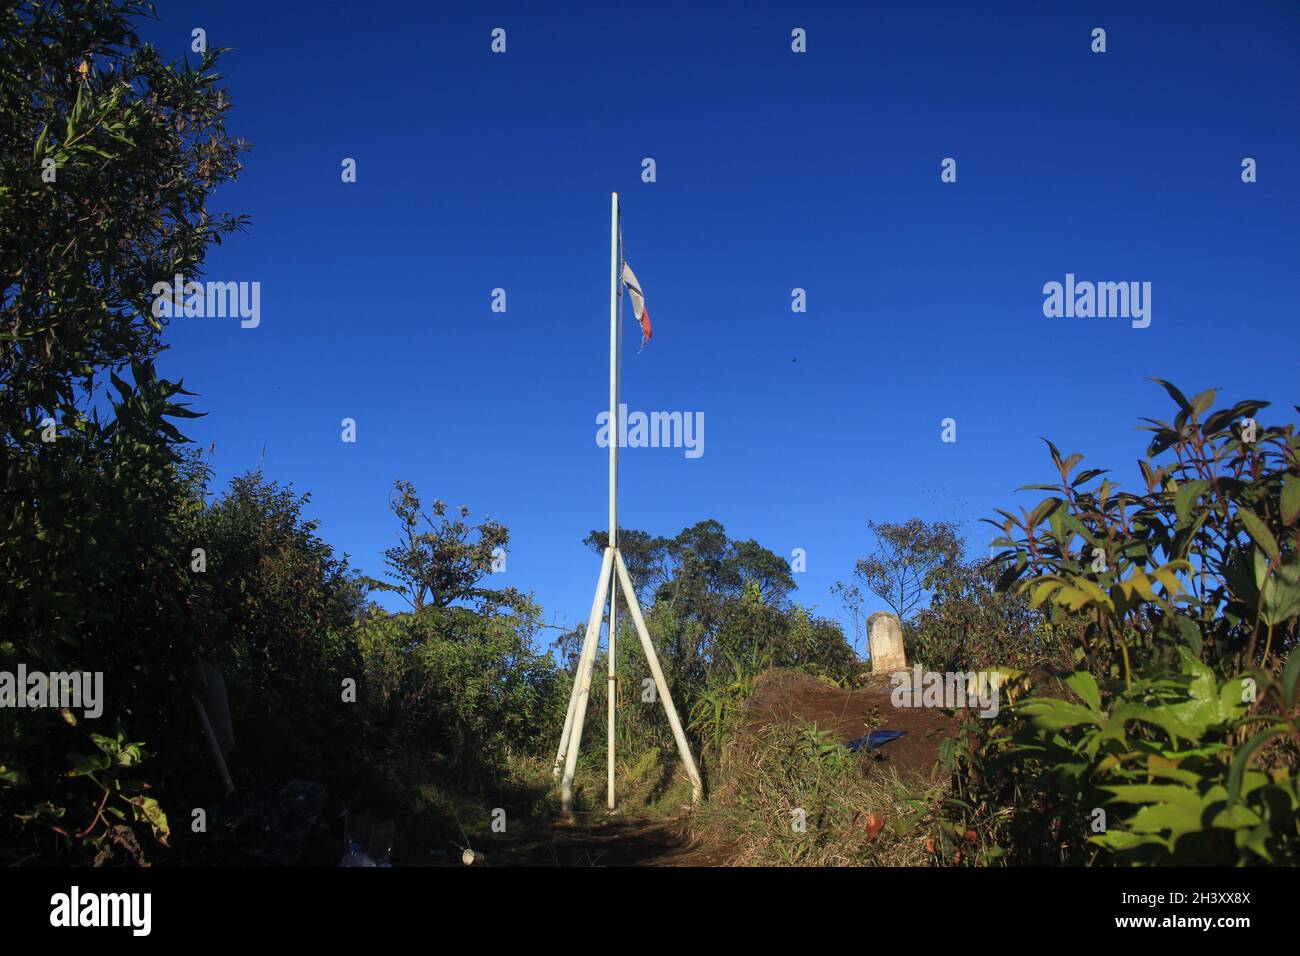 La bandiera rossa e bianca della Repubblica di Indonesia vola orgogliosamente sul monumento in ferro in cima al Monte Tugu, sullo sfondo blu cielo Foto Stock